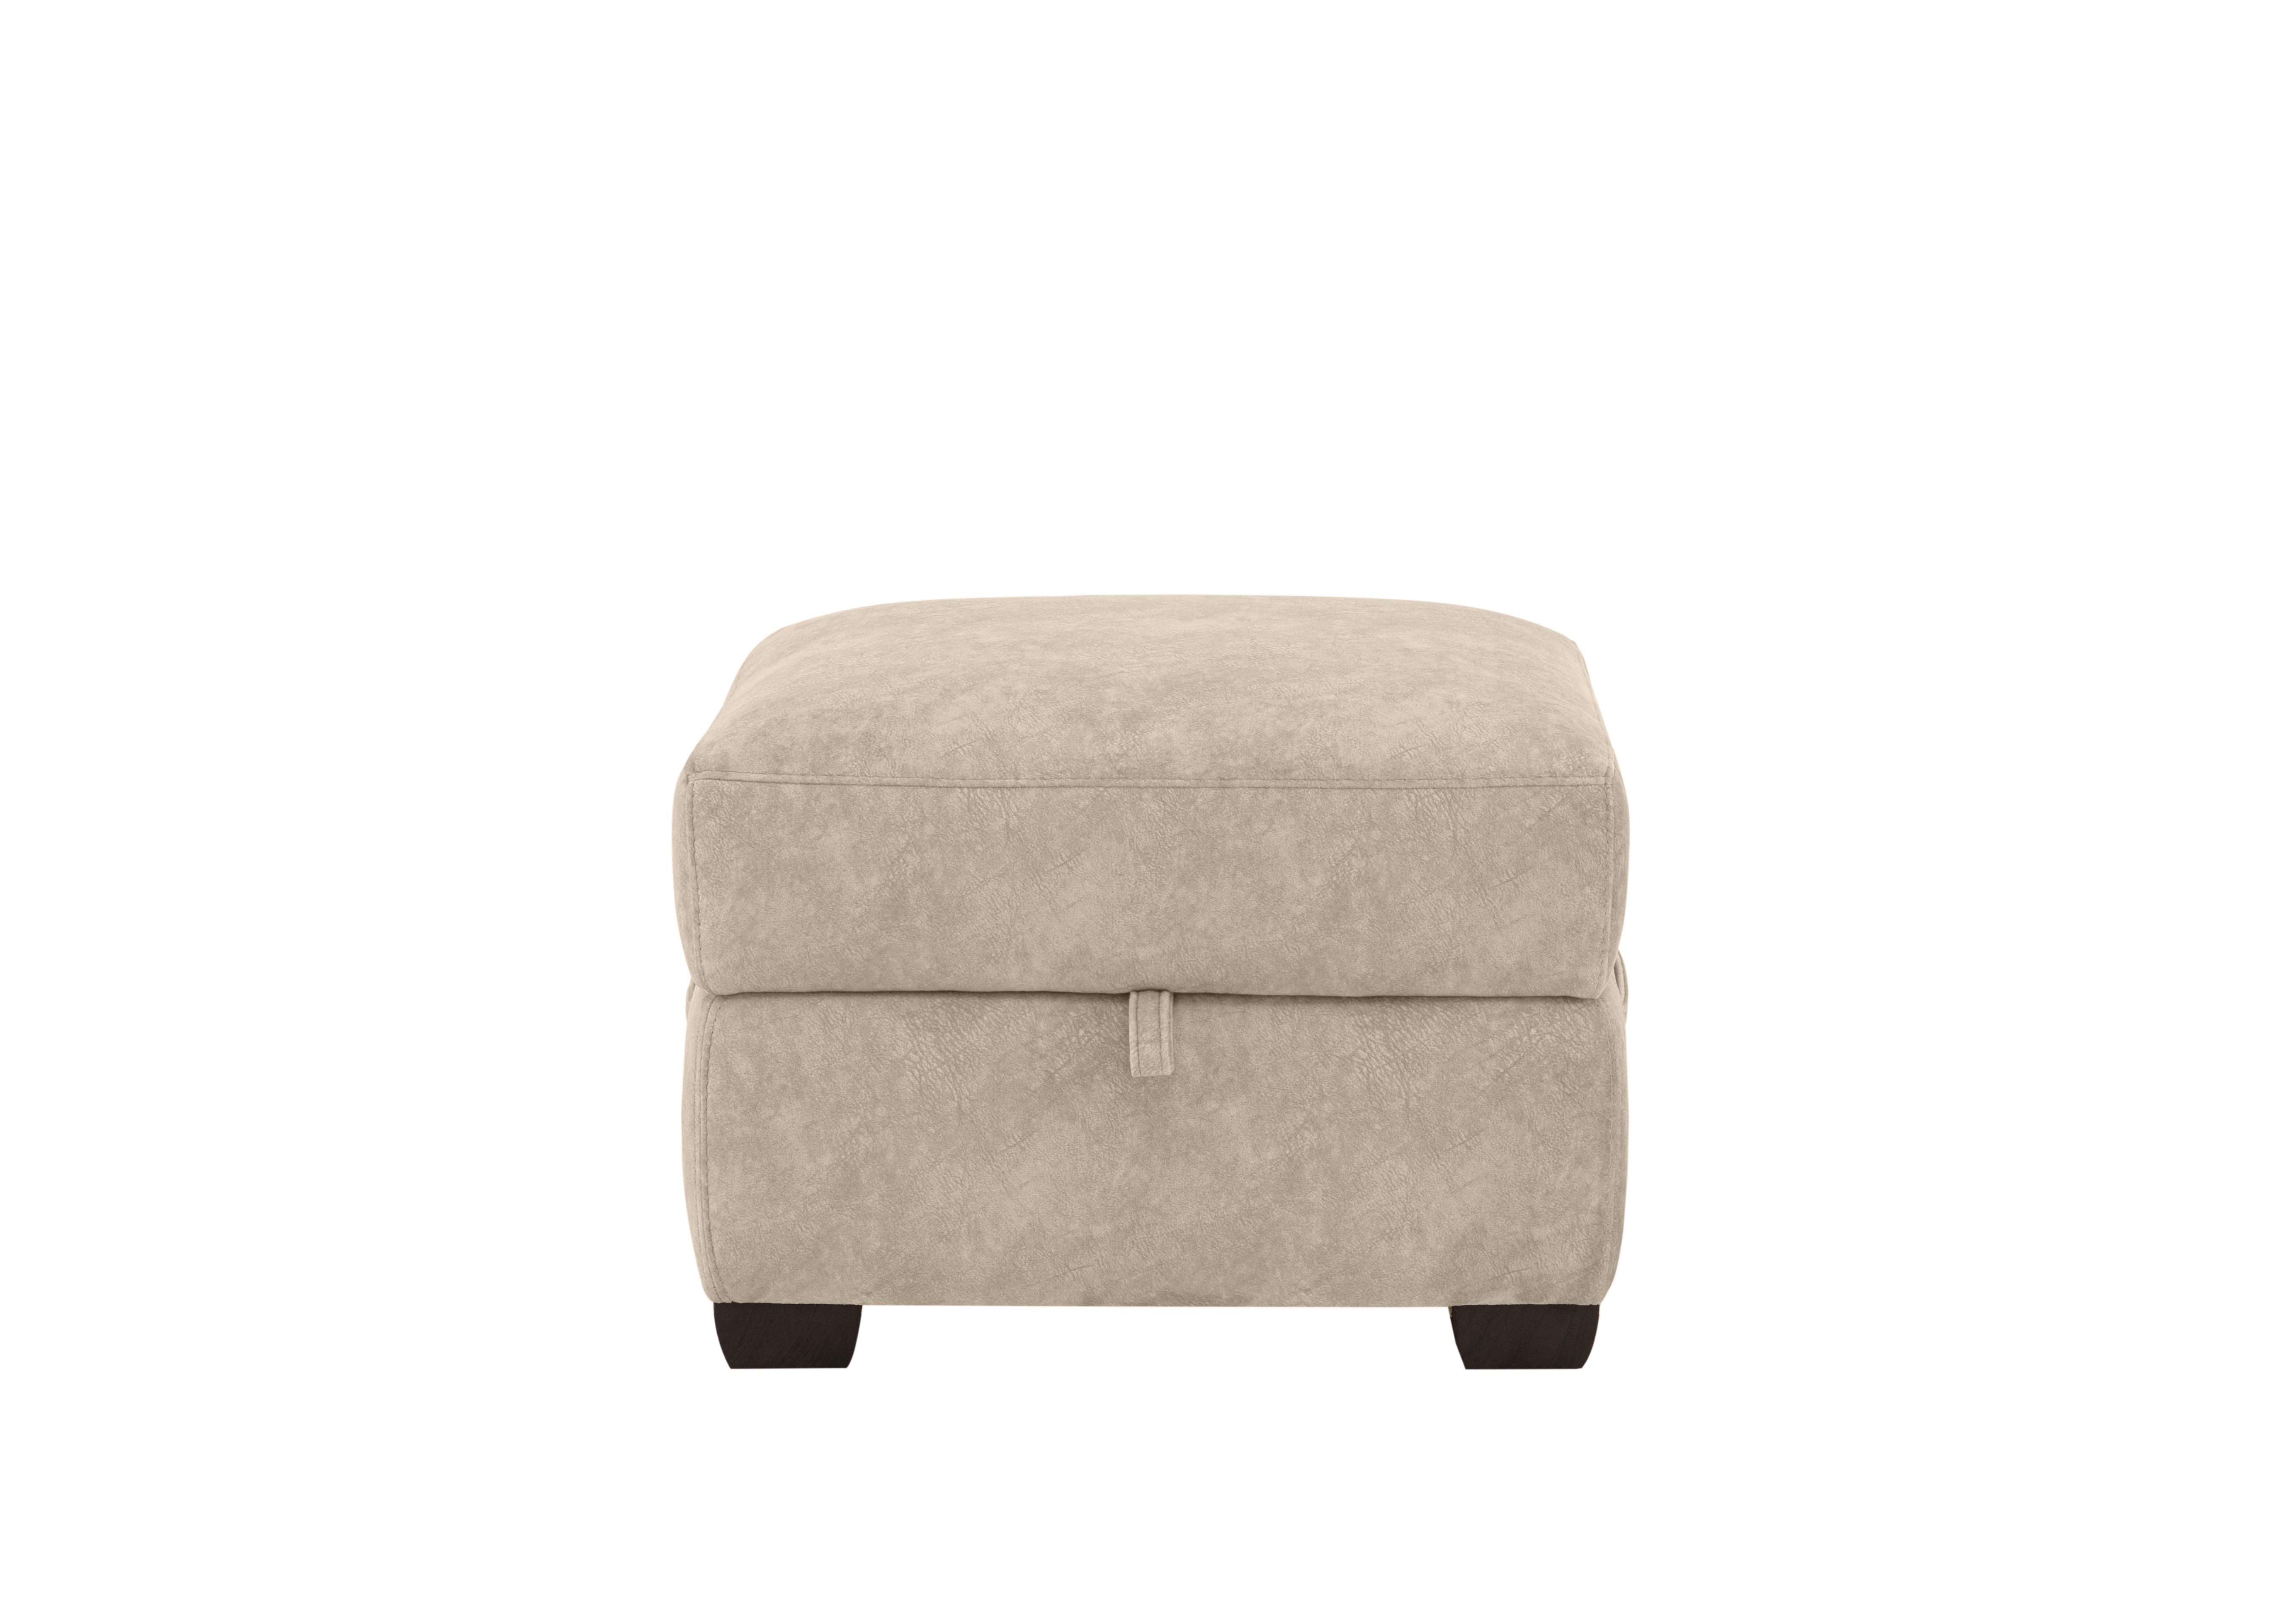 Chicago Fabric Storage Footstool in Bfa-Bnn-R26 Cream on Furniture Village